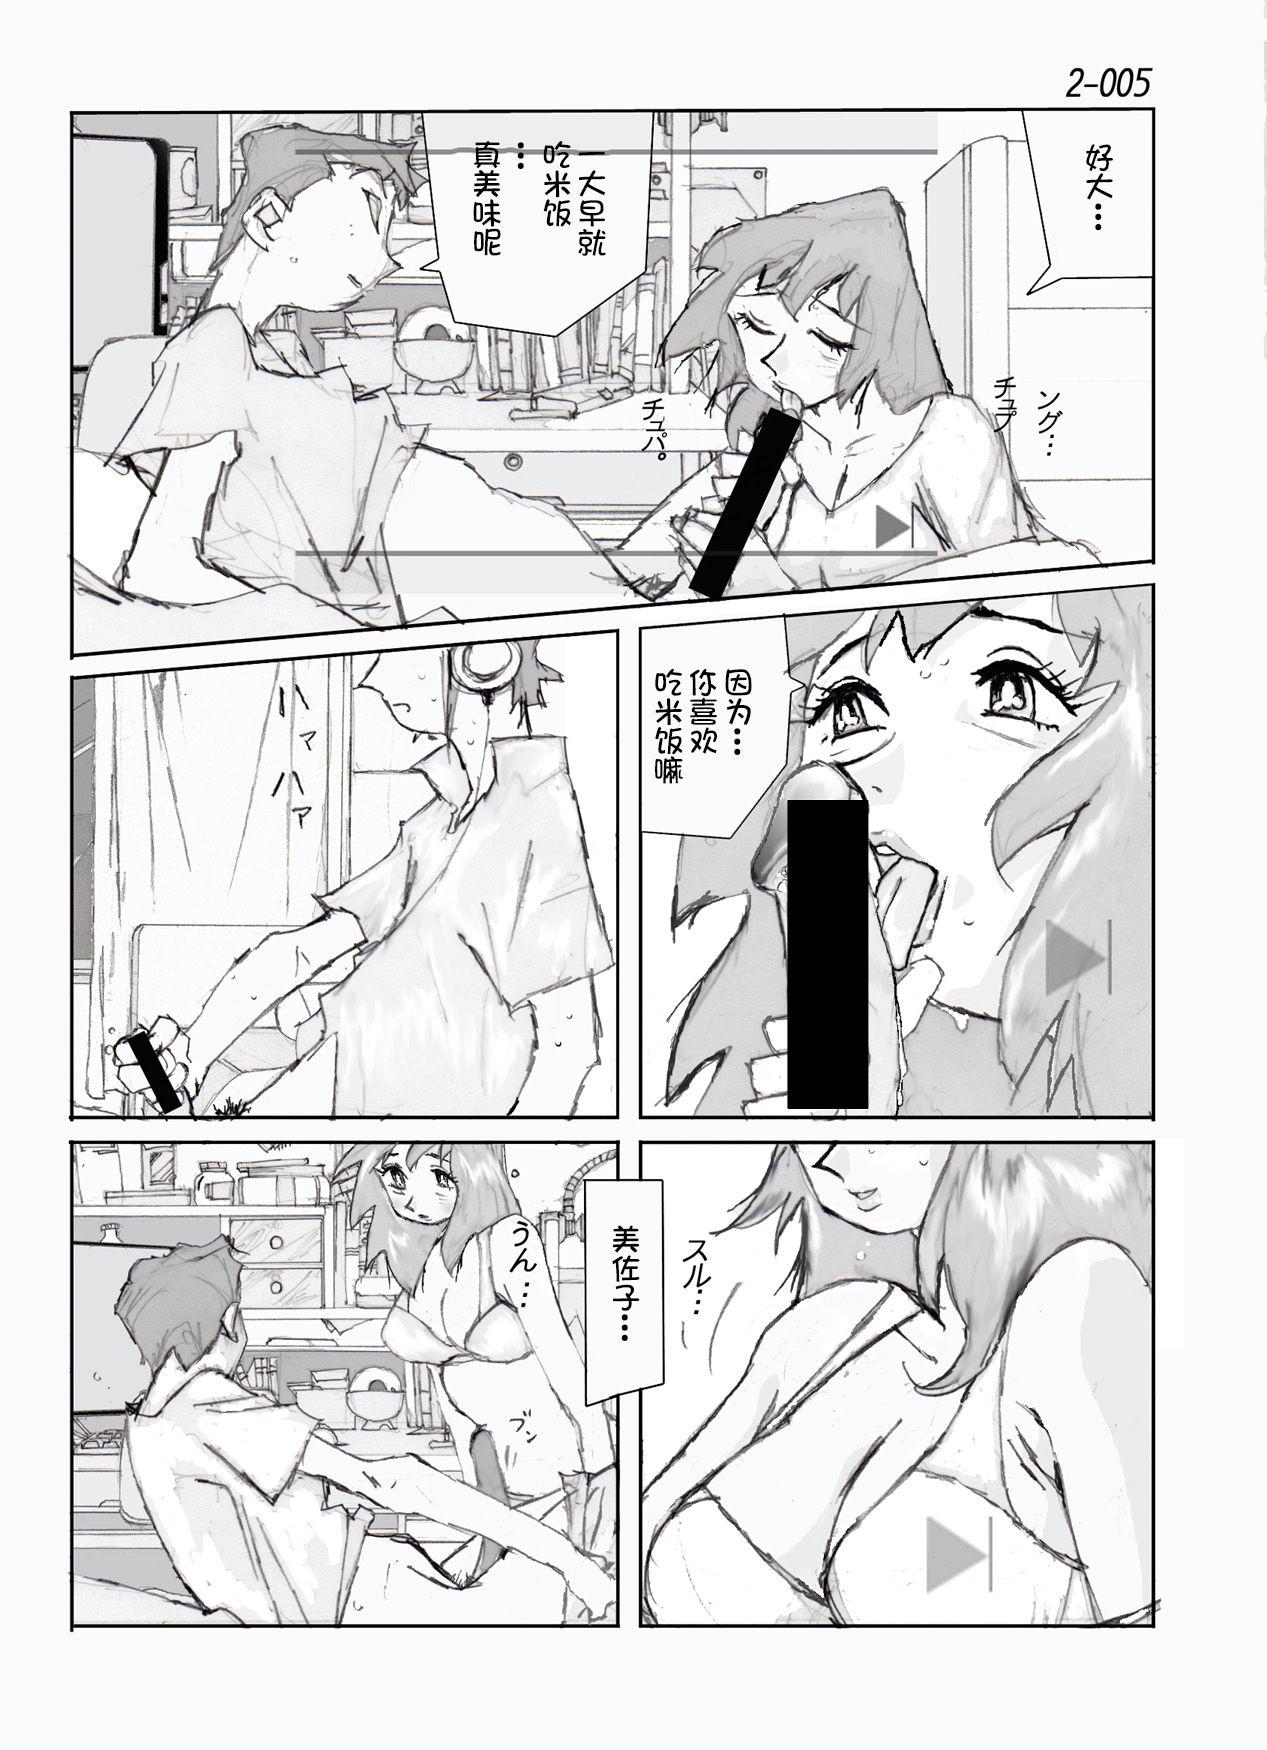 Perra Kamo no Aji - Misako 2 - Original Cumswallow - Page 6